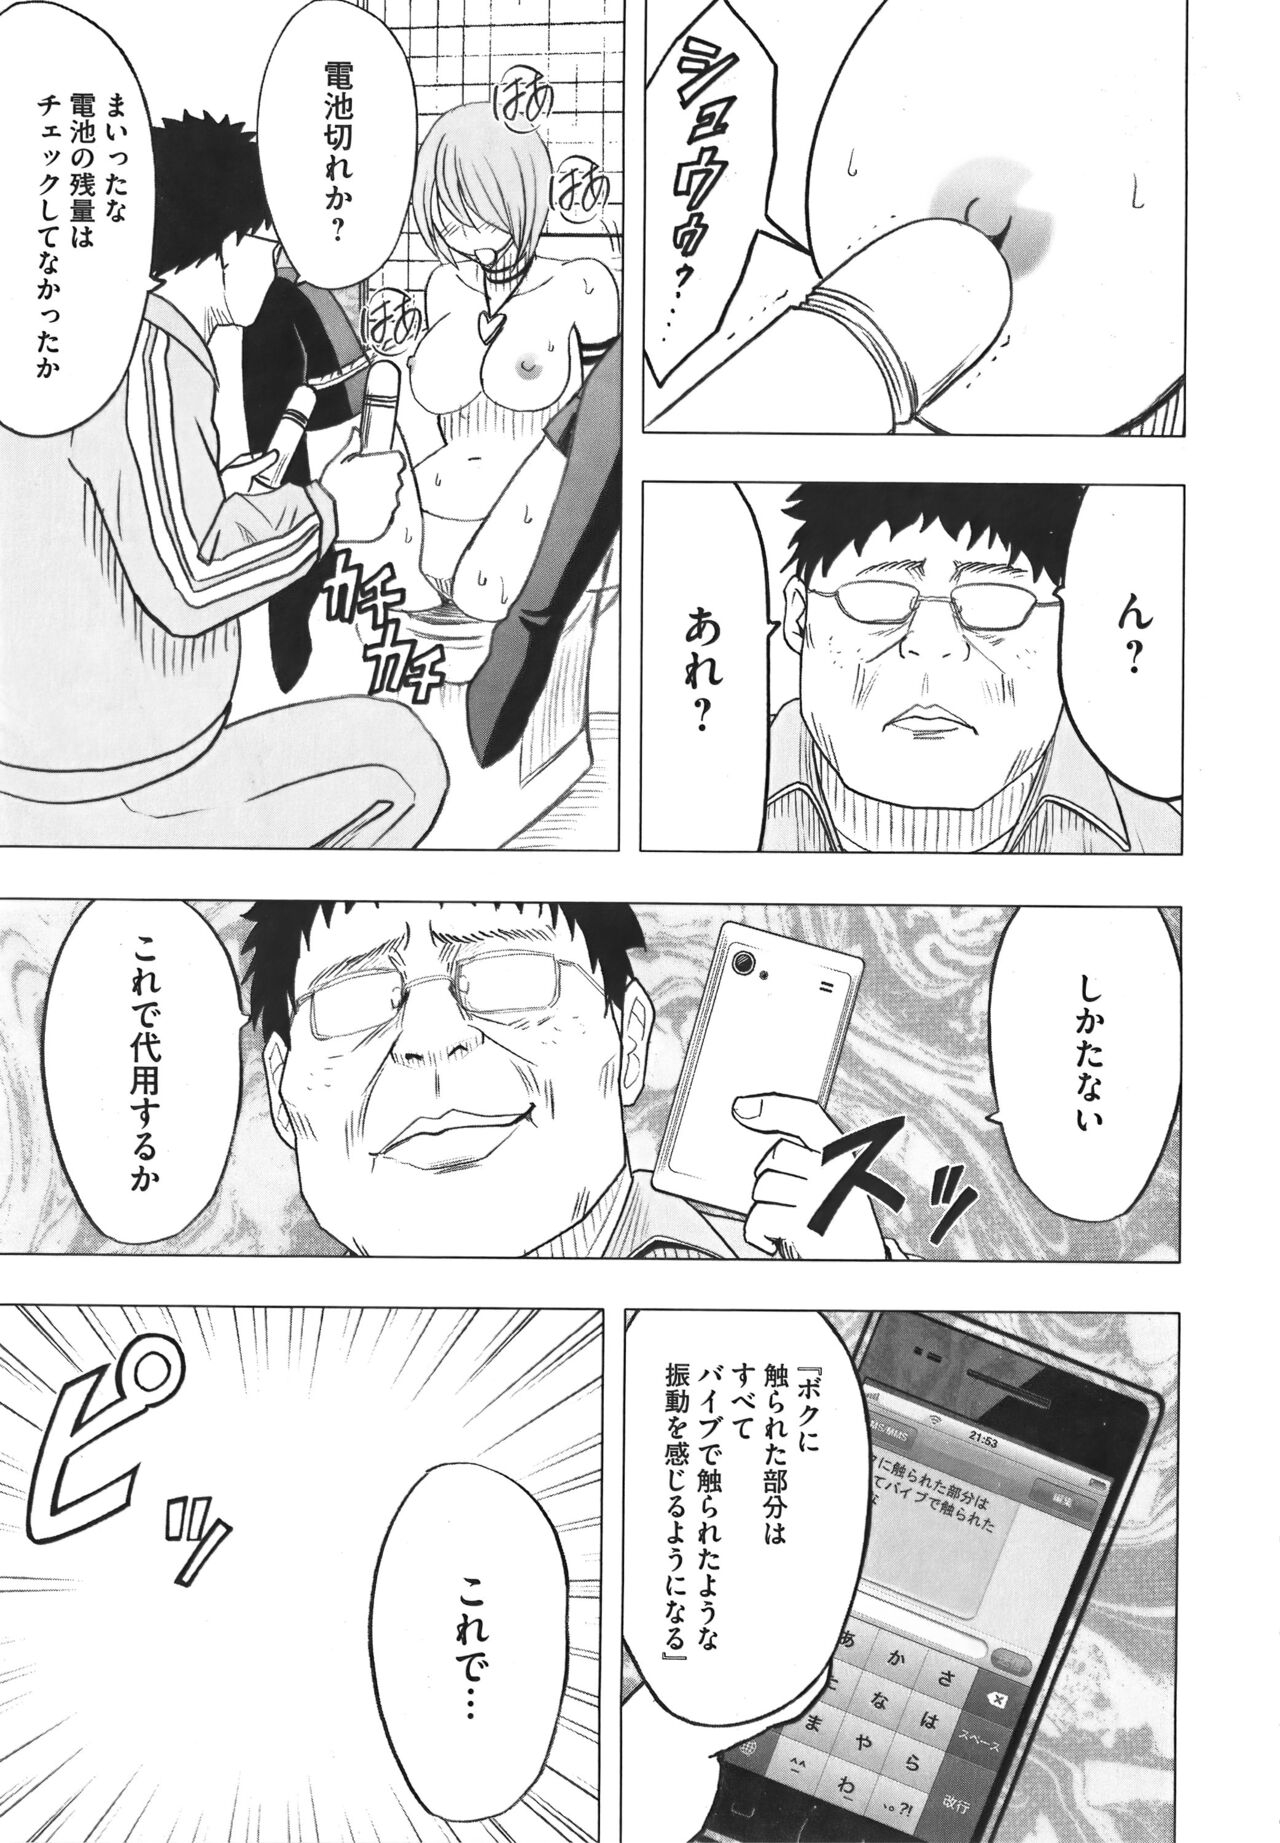 [Crimson] Idol Kyousei Sousa Vol.1 Smartphone de Meireishita Koto ga Genjitsu ni [Complete Edition] 216